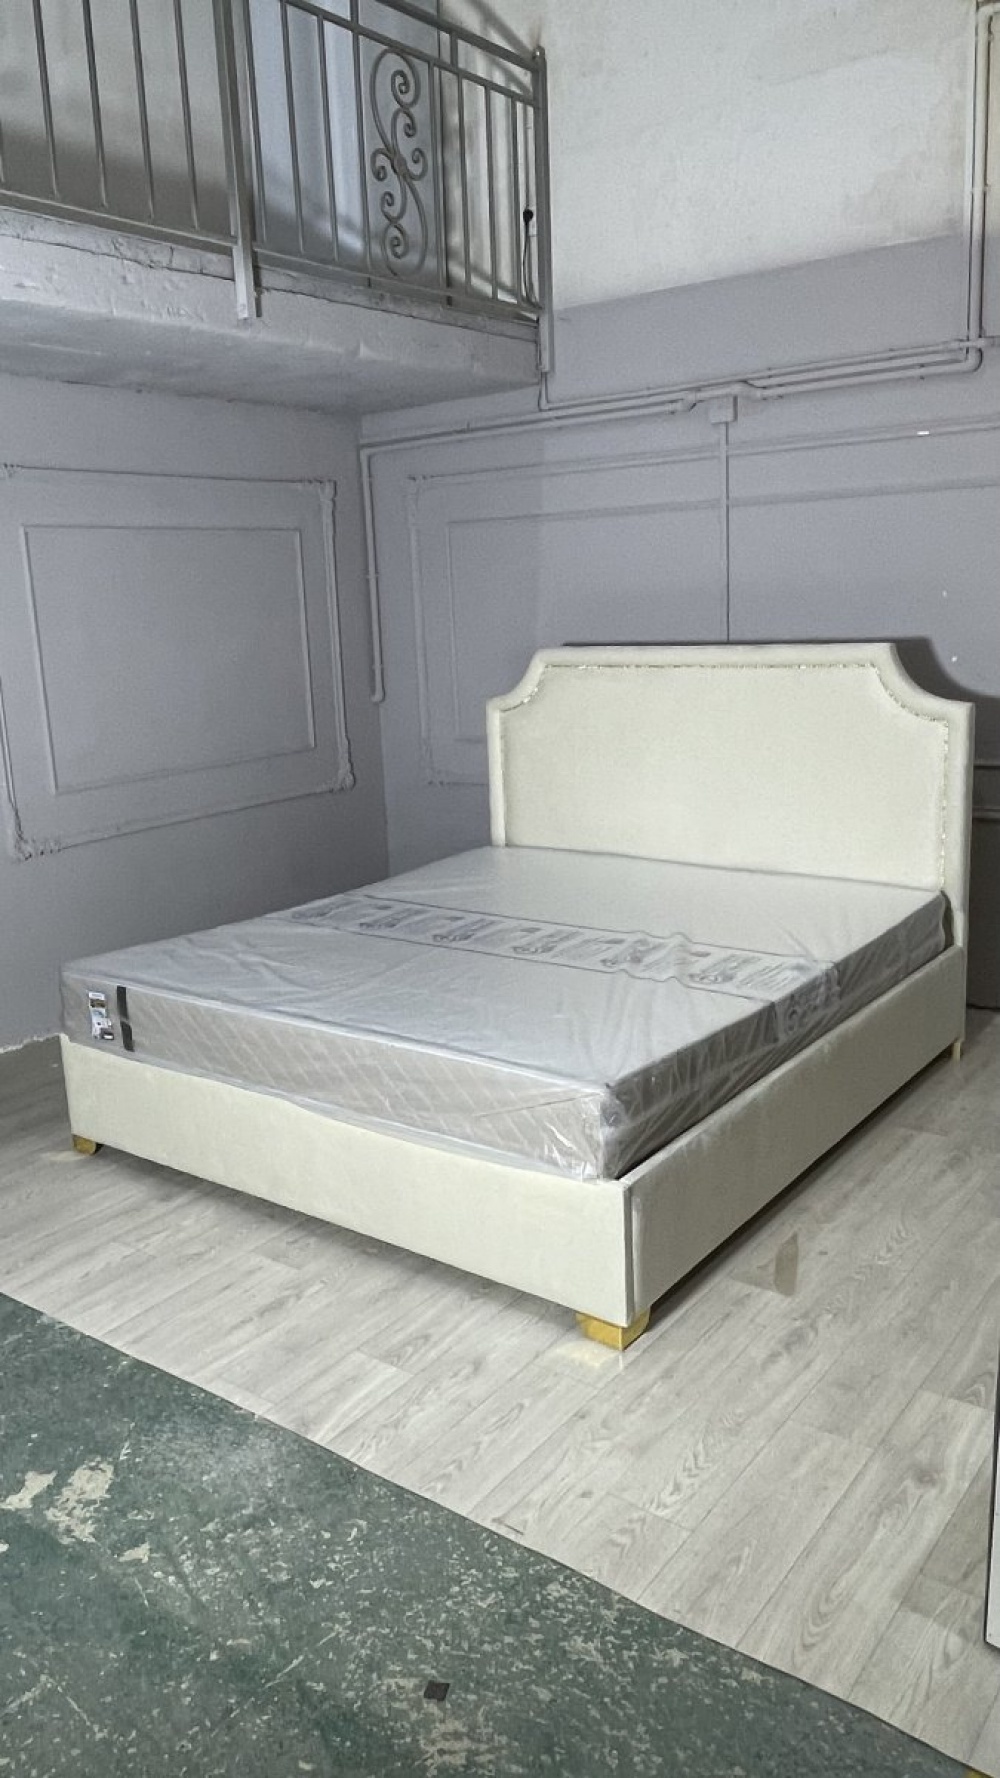 Кровать Сафари